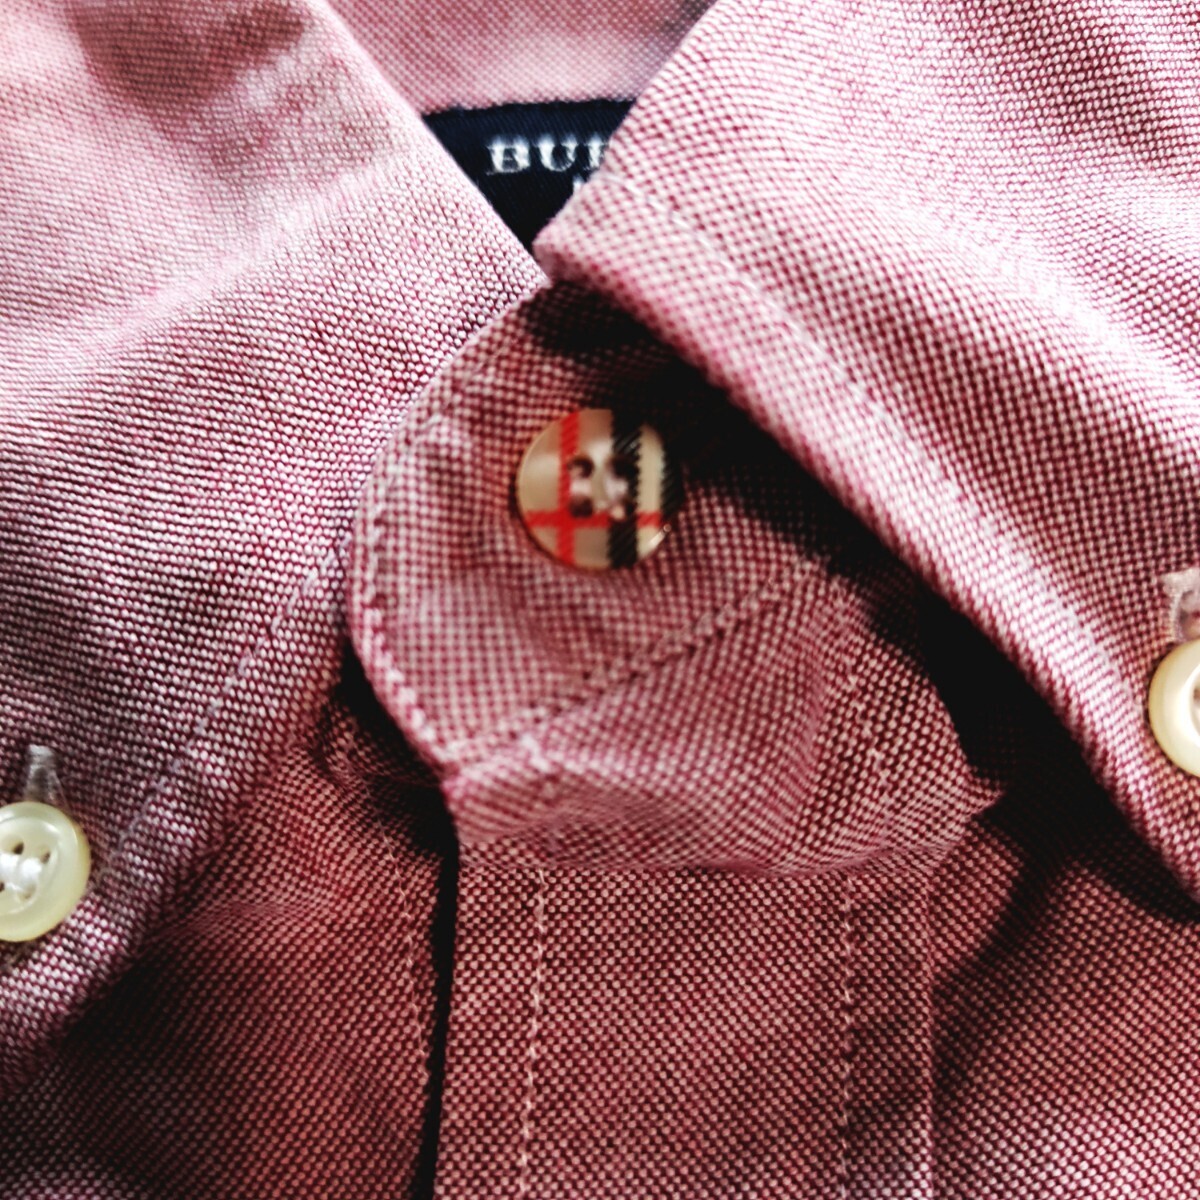 [ редкий товар XL размер ]BURBERRY LONDON ④[ модный весна цвет ] Burberry London рубашка с длинным рукавом красный кнопка down noba проверка кнопка Logo вышивка 